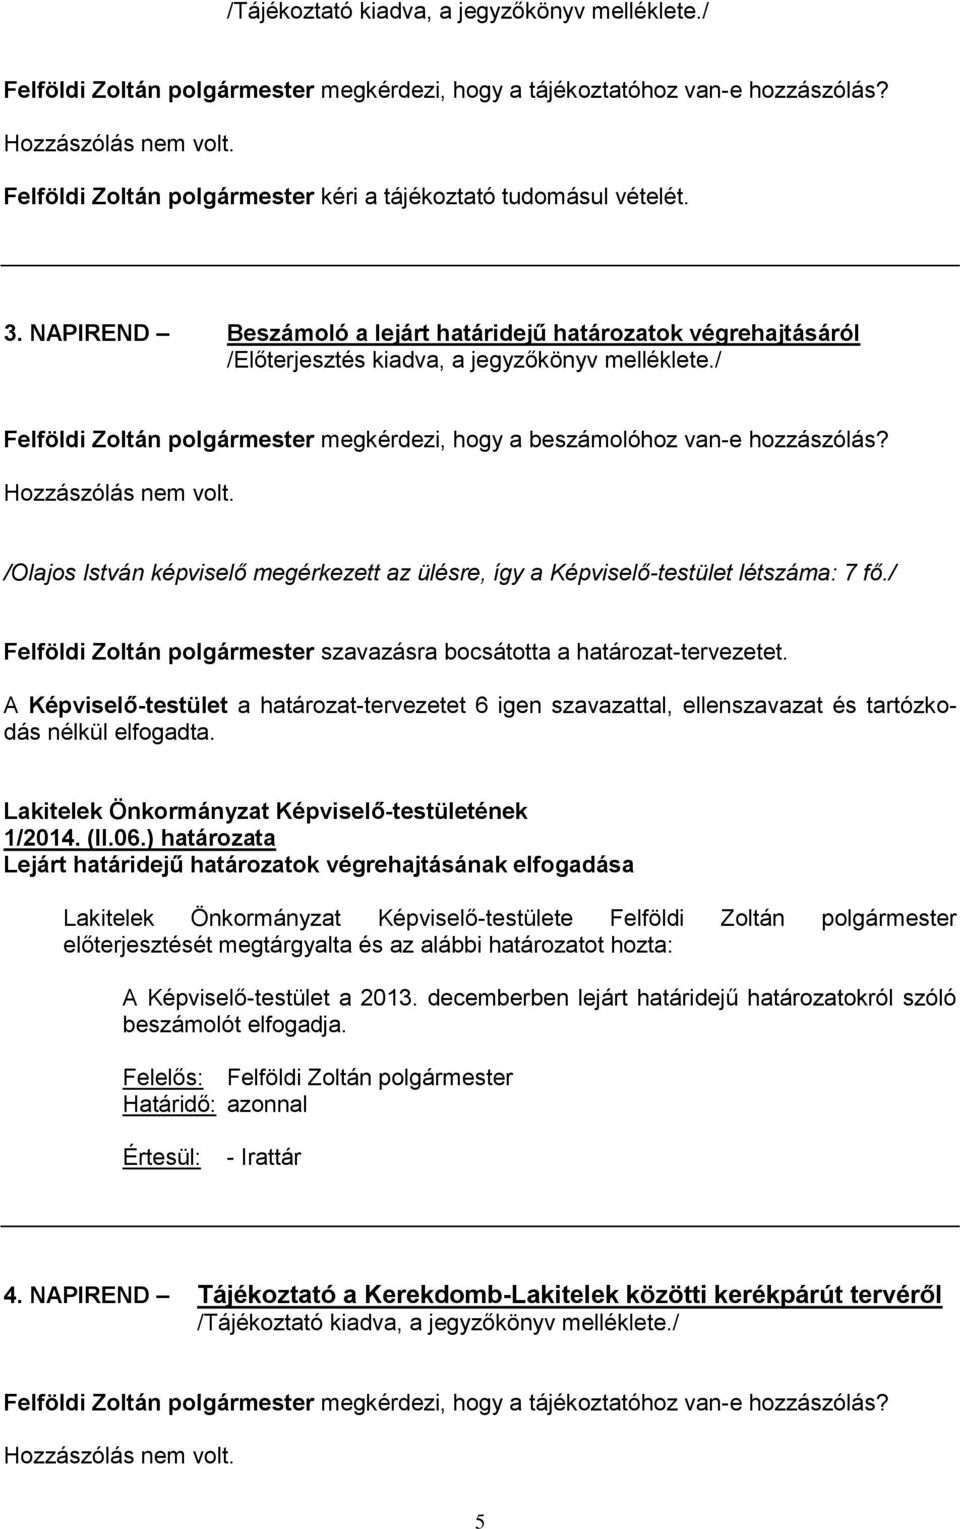 NAPIREND Beszámoló a lejárt határidejű határozatok végrehajtásáról Felföldi Zoltán polgármester megkérdezi, hogy a beszámolóhoz van-e hozzászólás? Hozzászólás nem volt.